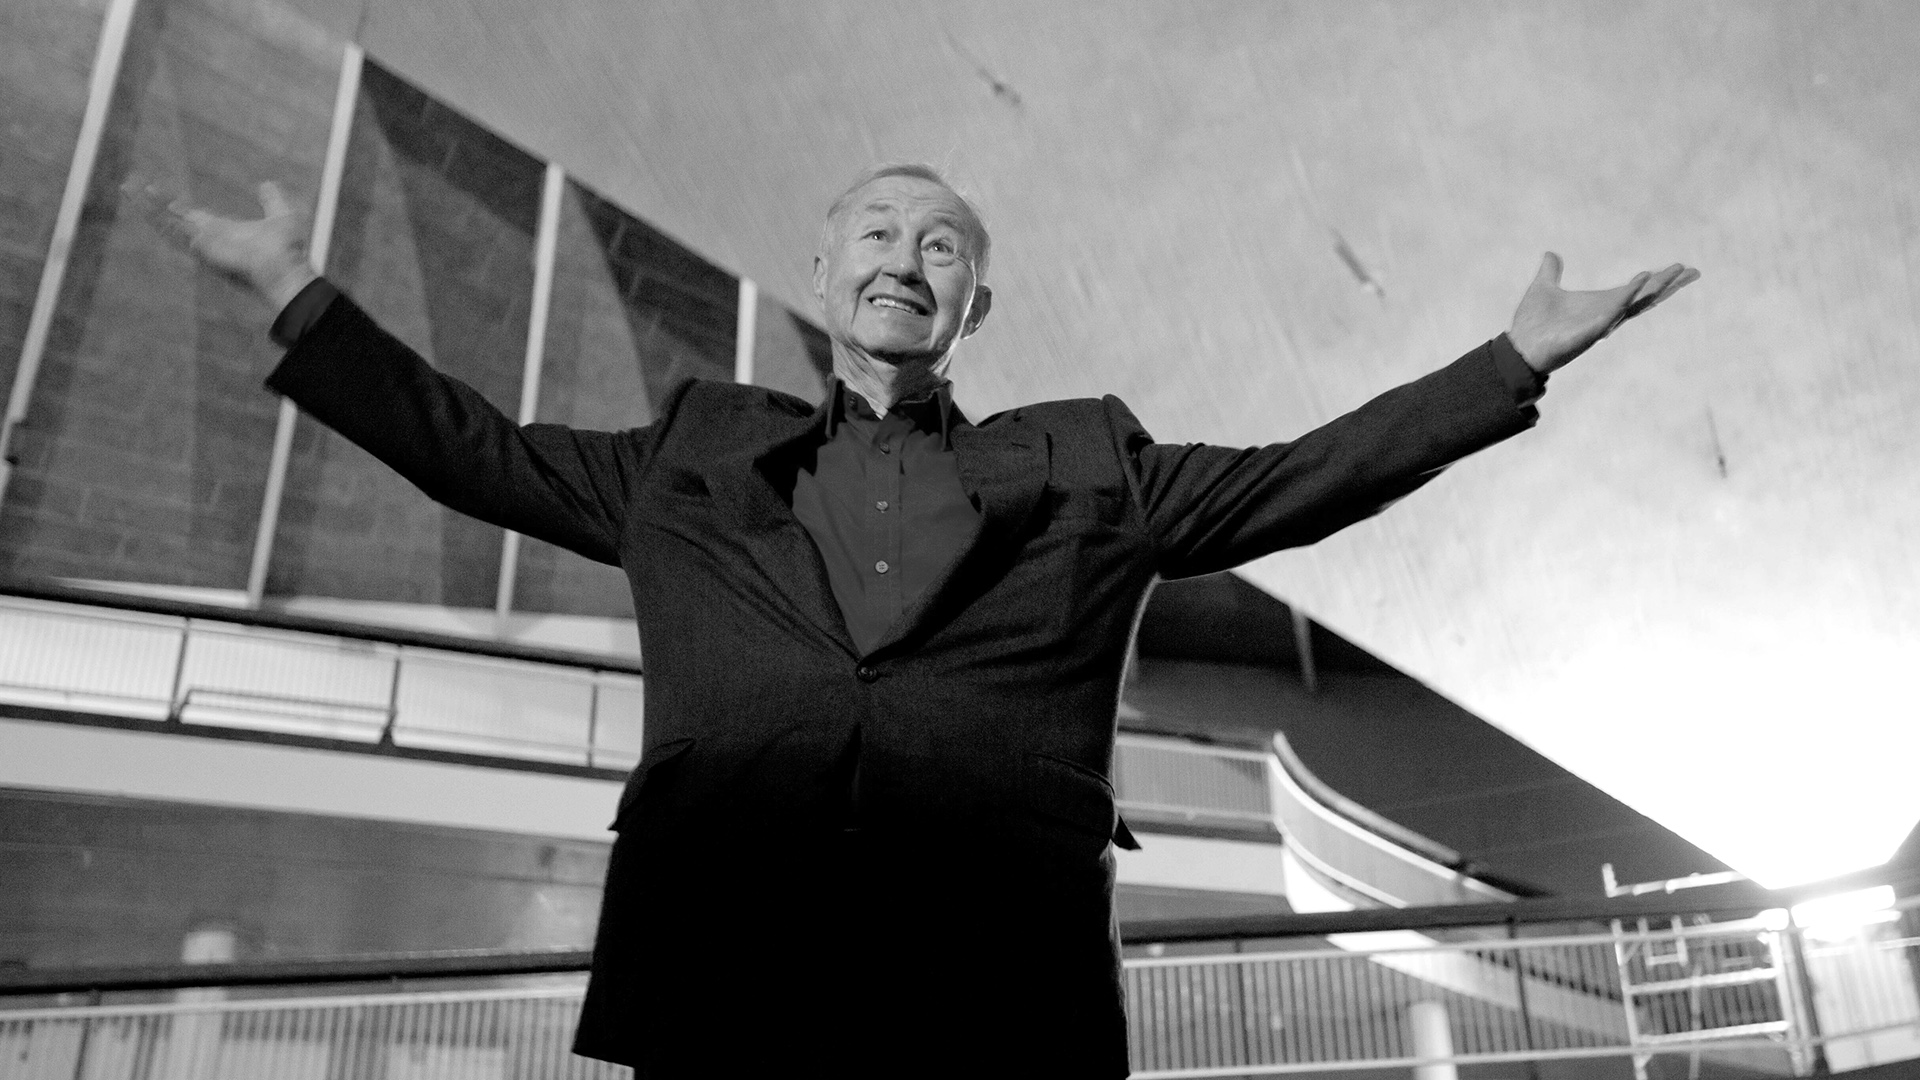 Sir Terence Conran, britischer Designer und Museumsgründer, ist am 12.09.2020 im Alter von 88 Jahren gestorben.